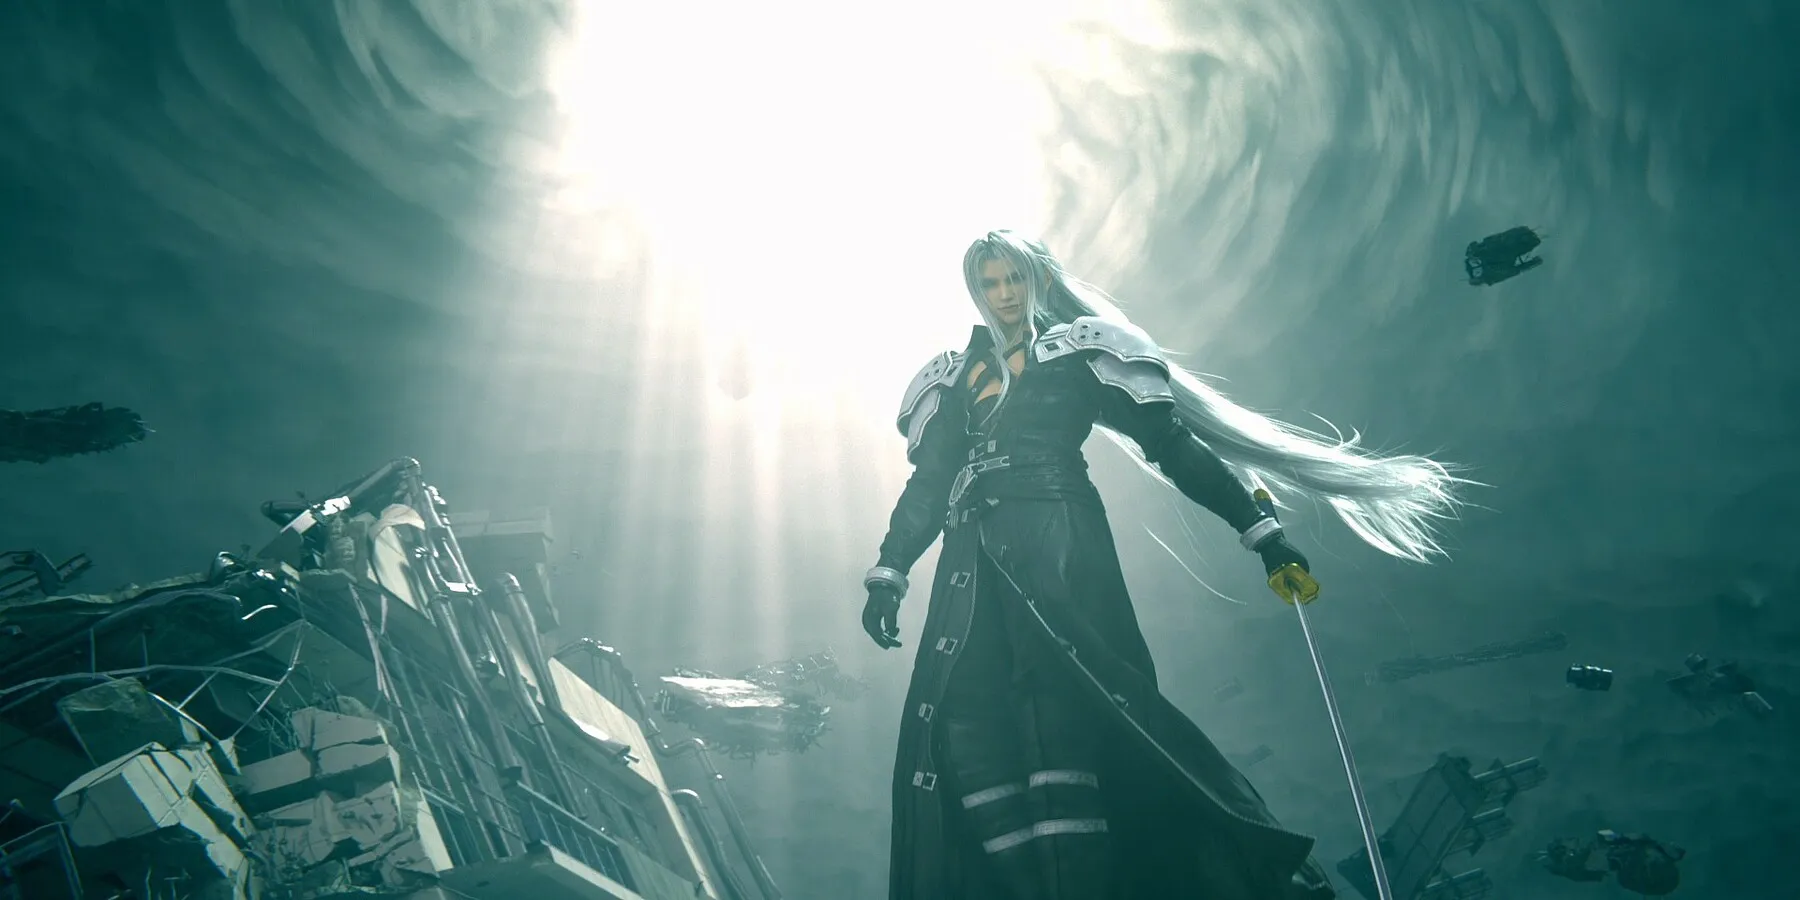 Le directeur et le directeur créatif de Final Fantasy 7 Rebirth parlent de la scène clé du jeu qui "apportera de nouvelles émotions" aux joueurs.